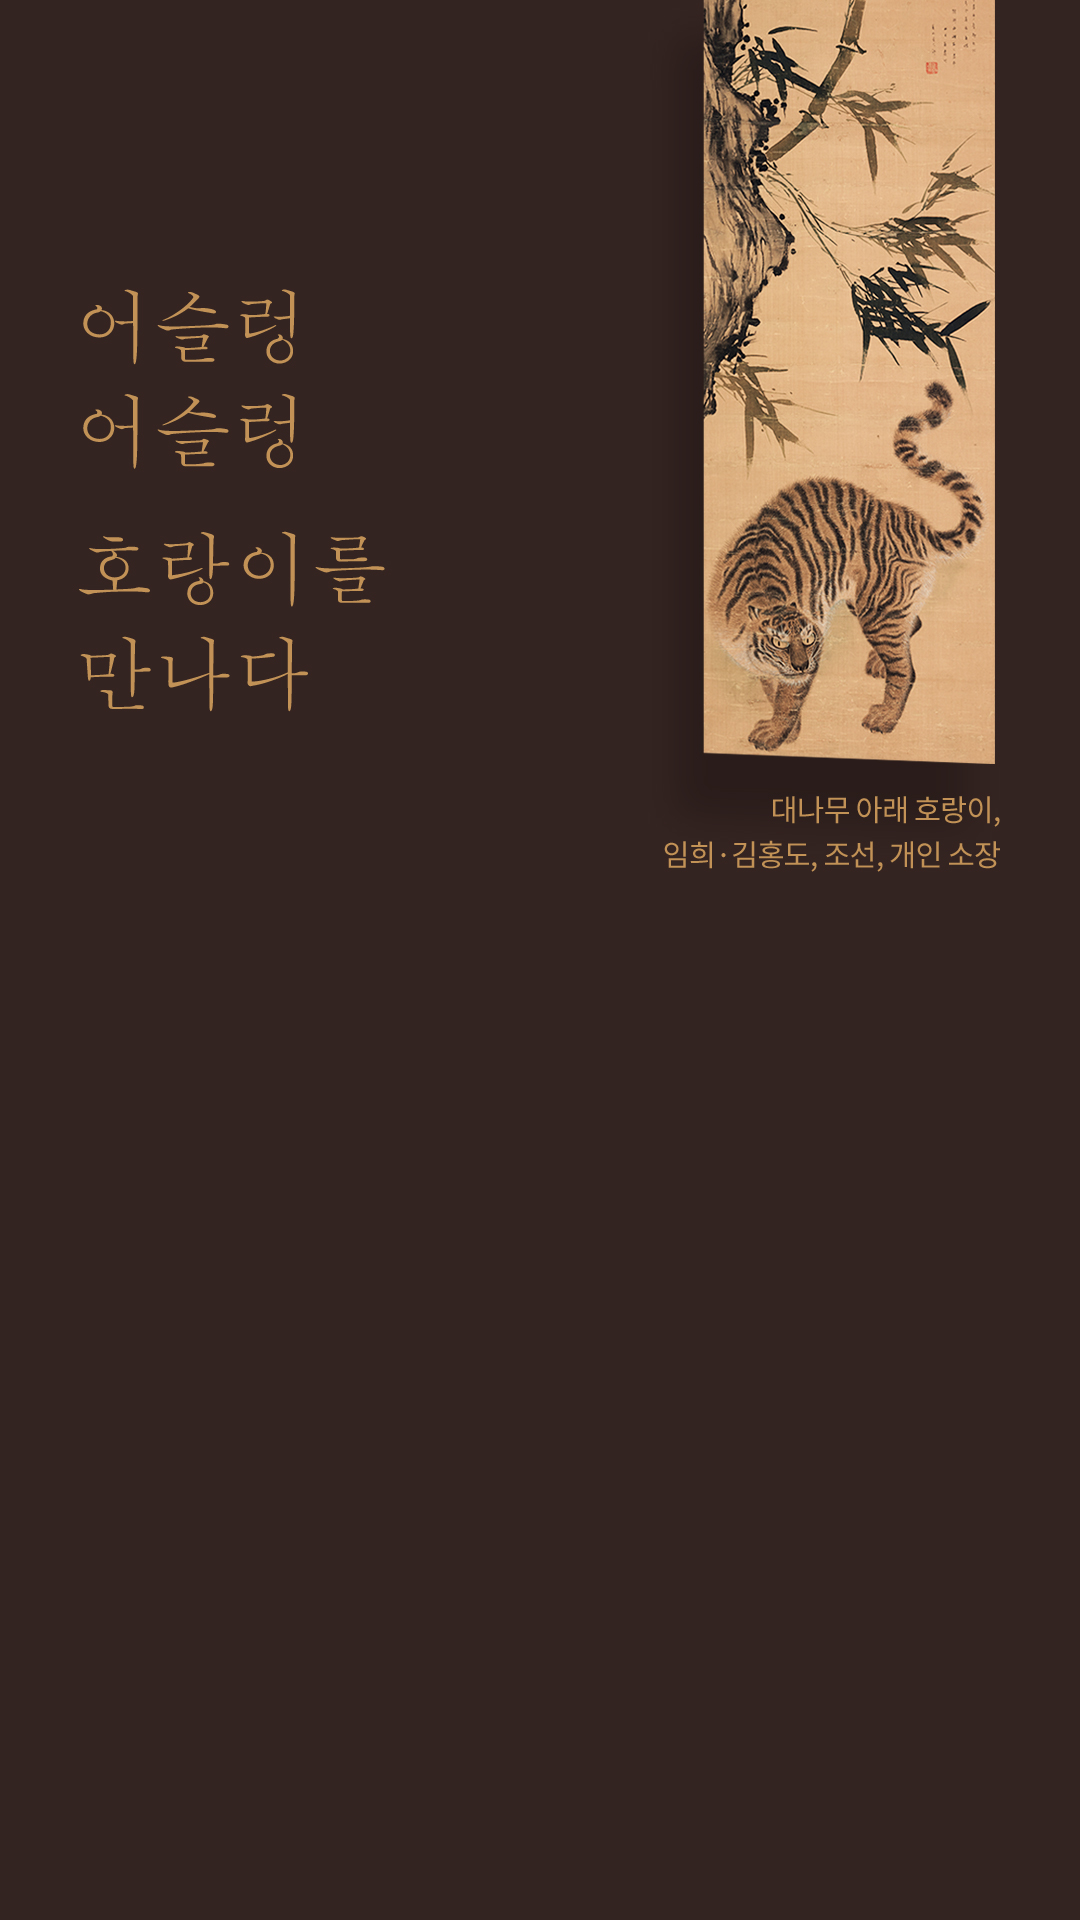 대나무 아래 호랑이, 임희·김홍도, 조선, 개인 소장